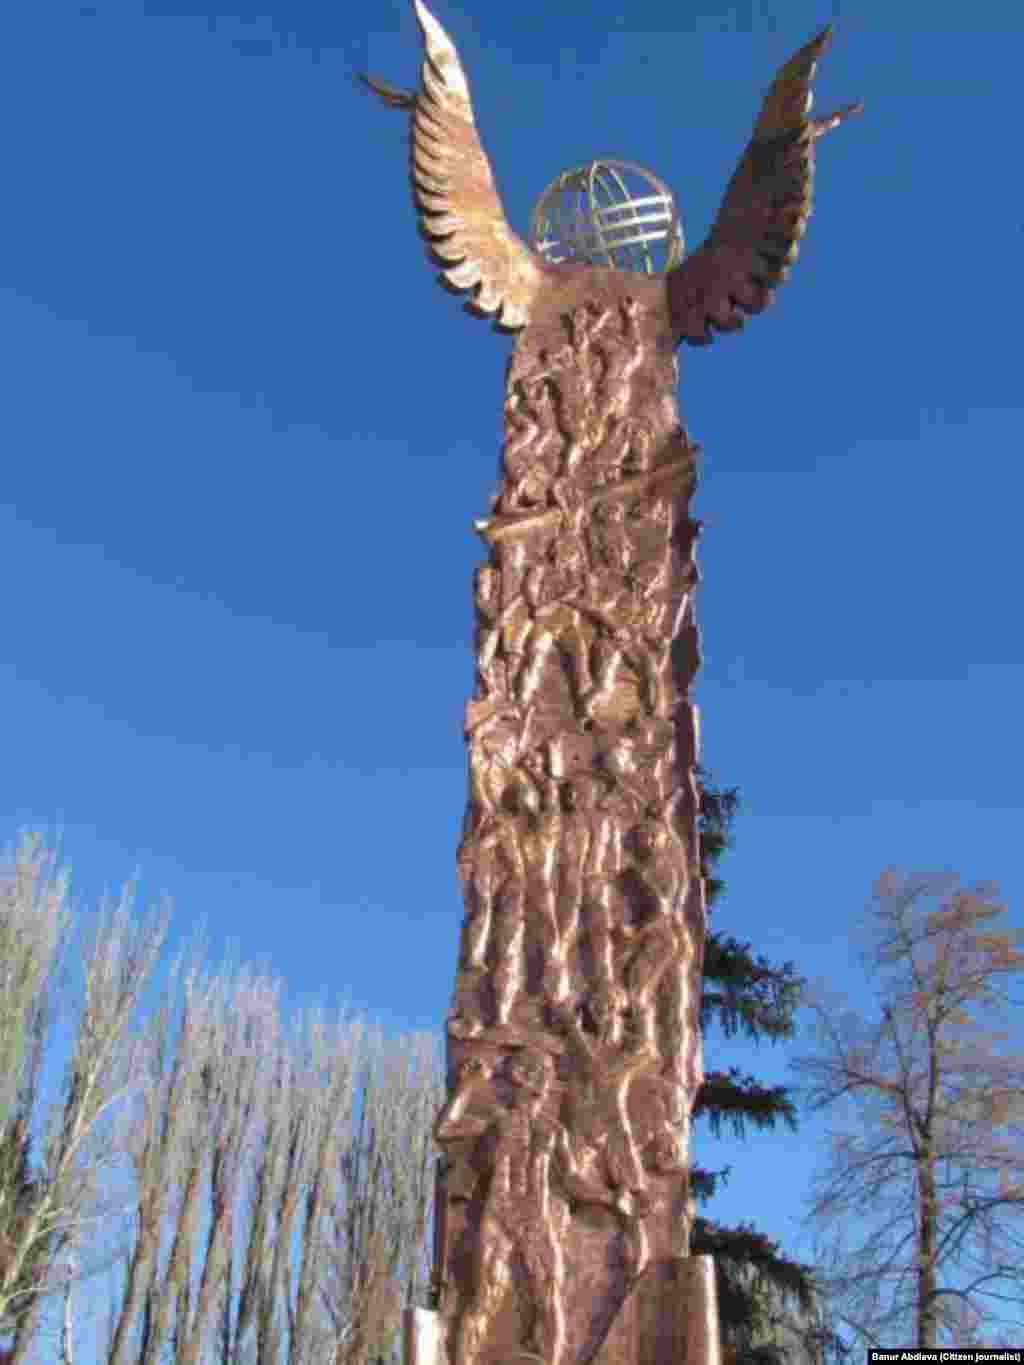 Памятник героям апрельских событий, вызвавший много споров в обществе.